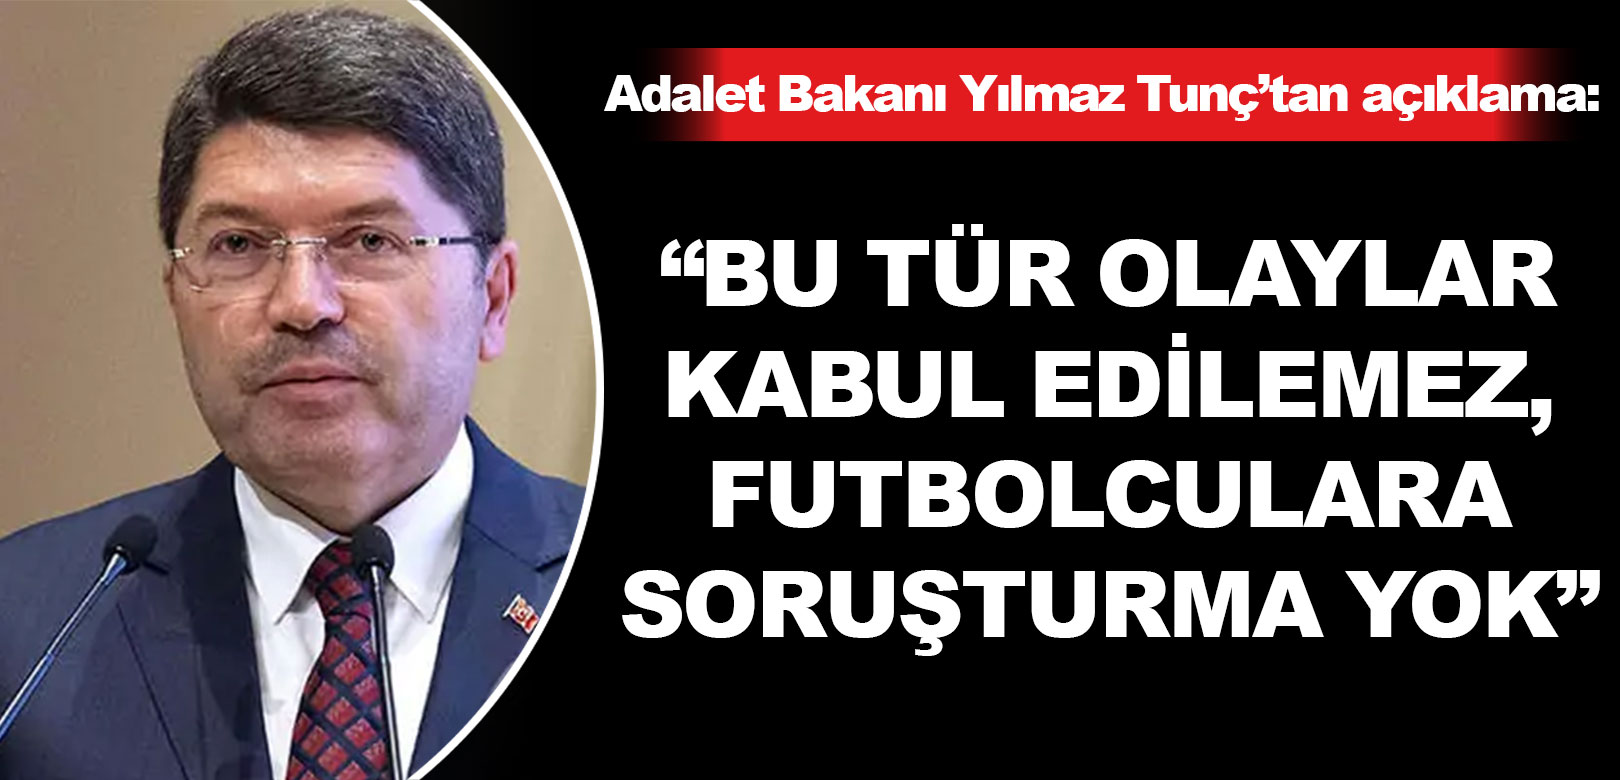 Adalet Bakanı Yılmaz Tunç: Bu tür olaylar kabul edilemez, futbolculara soruşturma yok